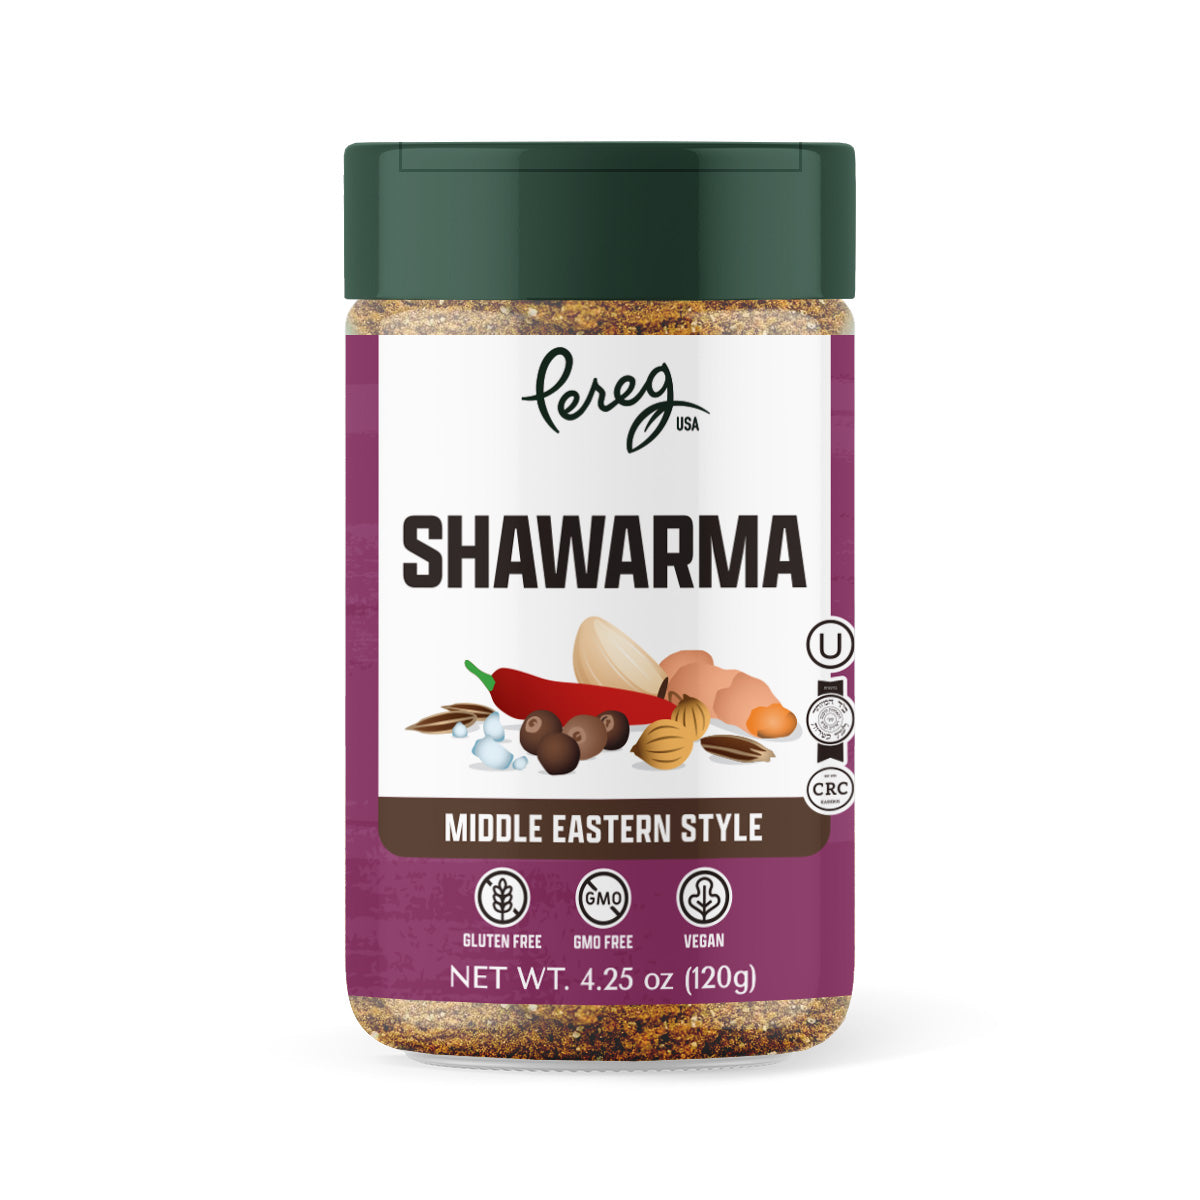 Image of Pereg Shawarma Seasoning – use code KOSHEREVERYDAY for 15% off